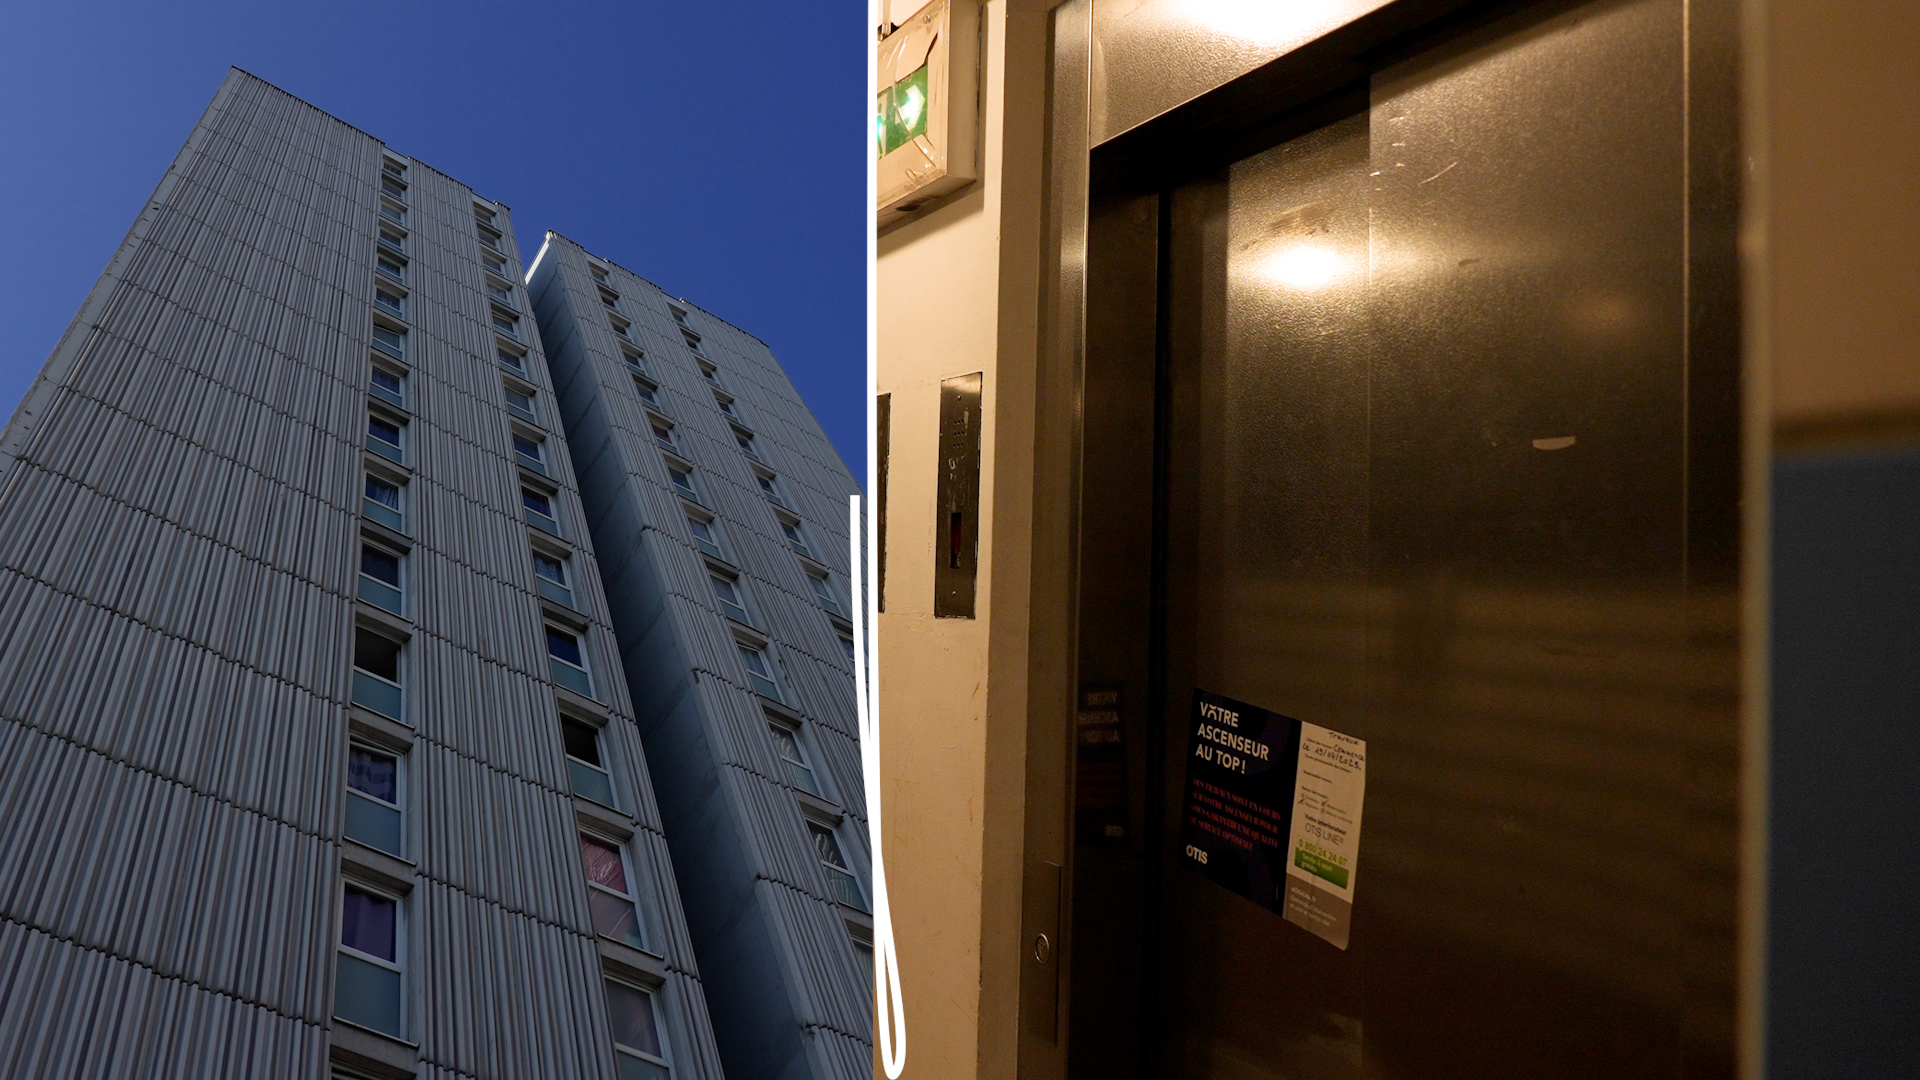 Aubervilliers (Seine-Saint-Denis), 19 avril 2023. Les habitants de cette tour de 17 étages vivent sans ascenseur depuis plusieurs mois.